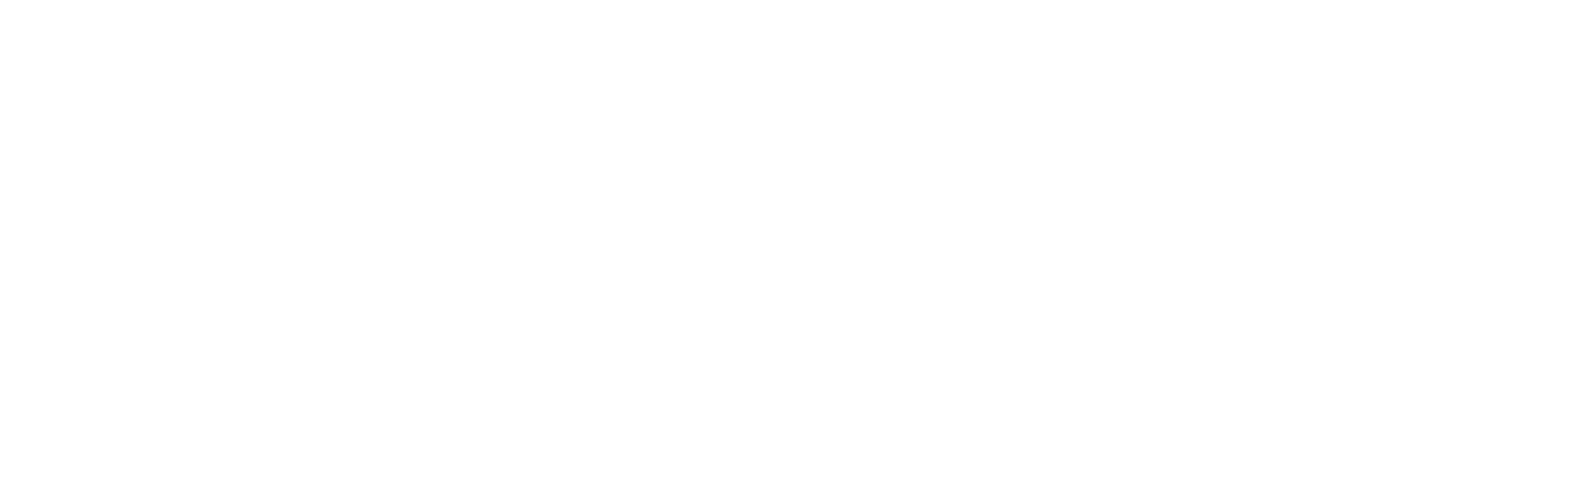 Black Hat Media Partner Computer News Middle East